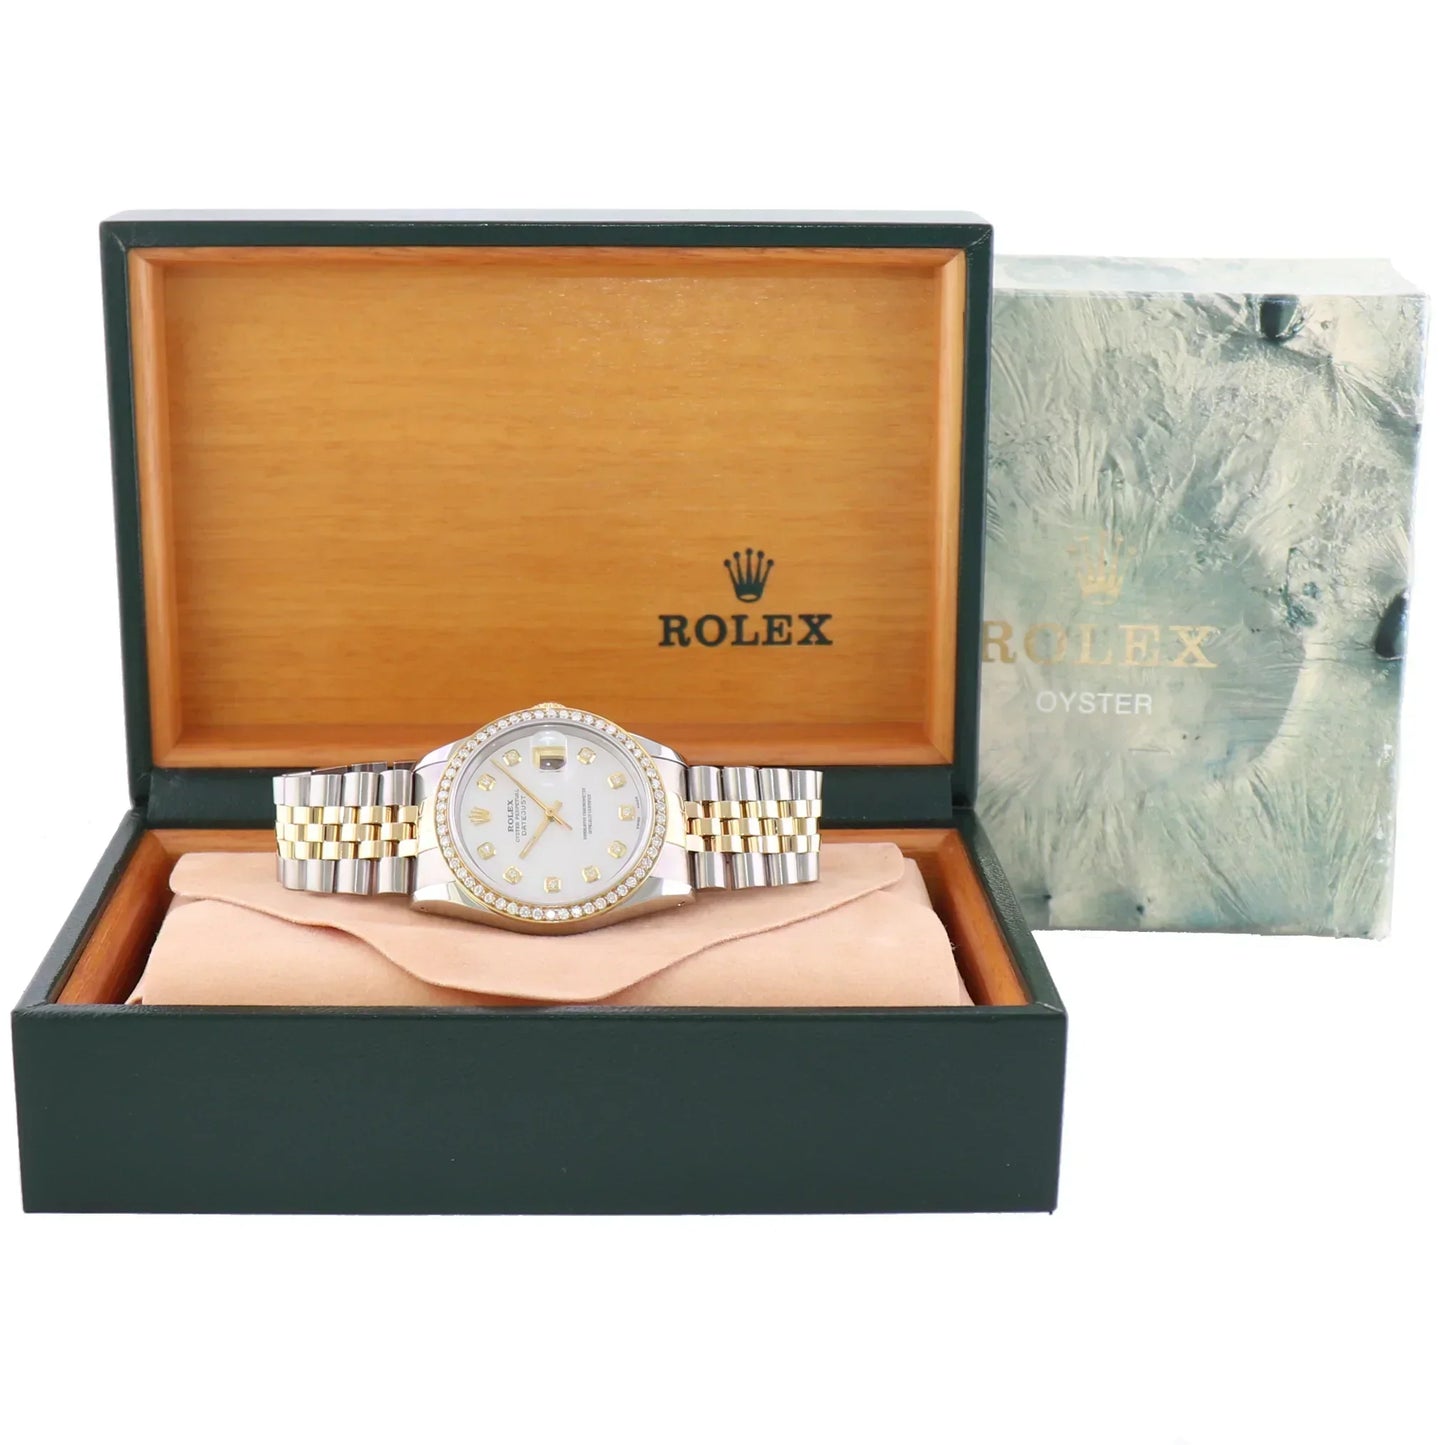 DIAMOND BEZEL Rolex DateJust 16233 Two-Tone 18K Yellow Gold MOP Jubilee Watch